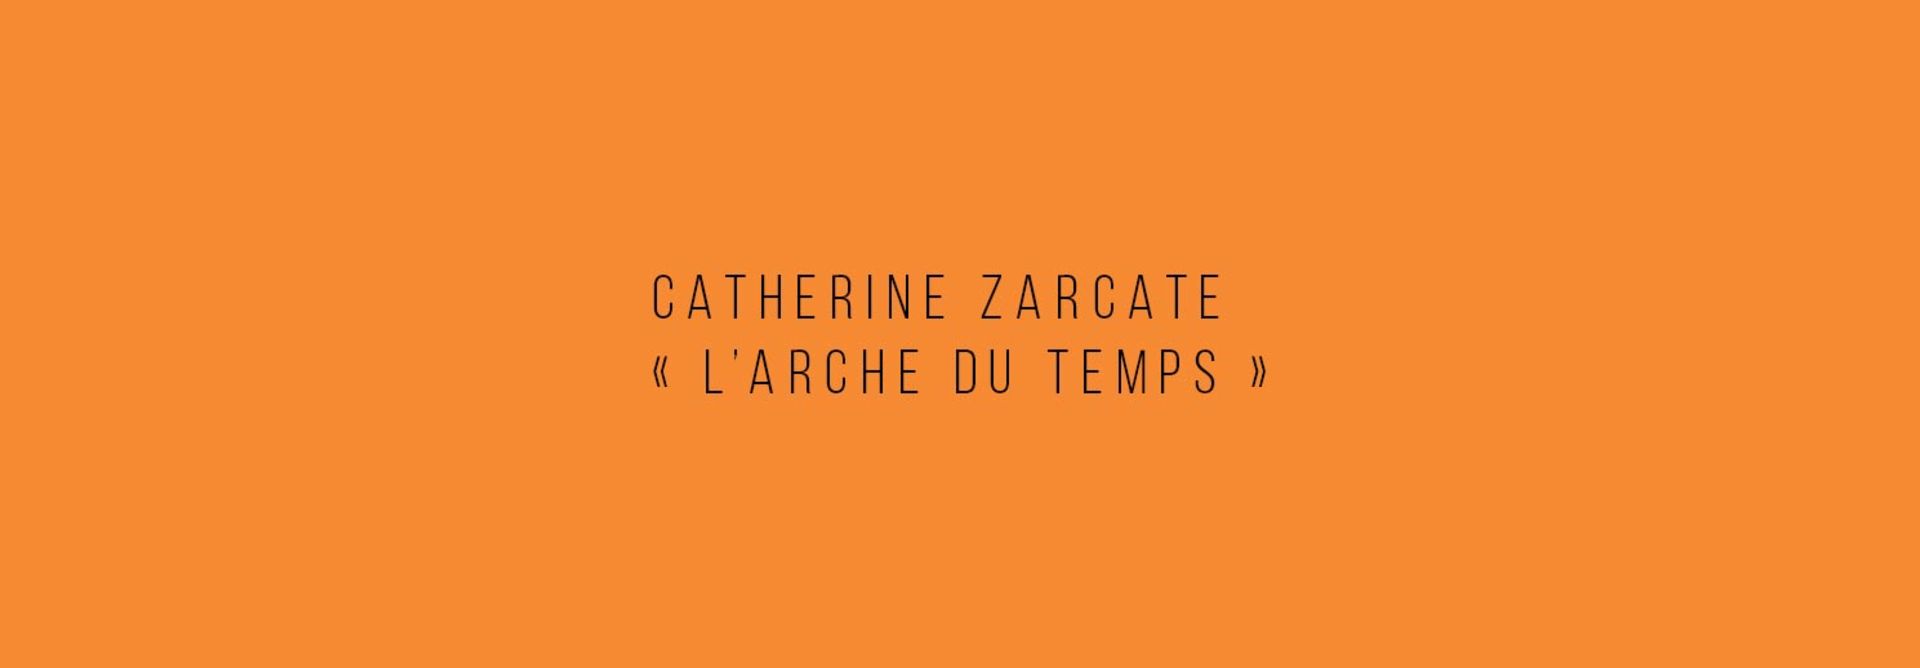 Catherine Zarcate